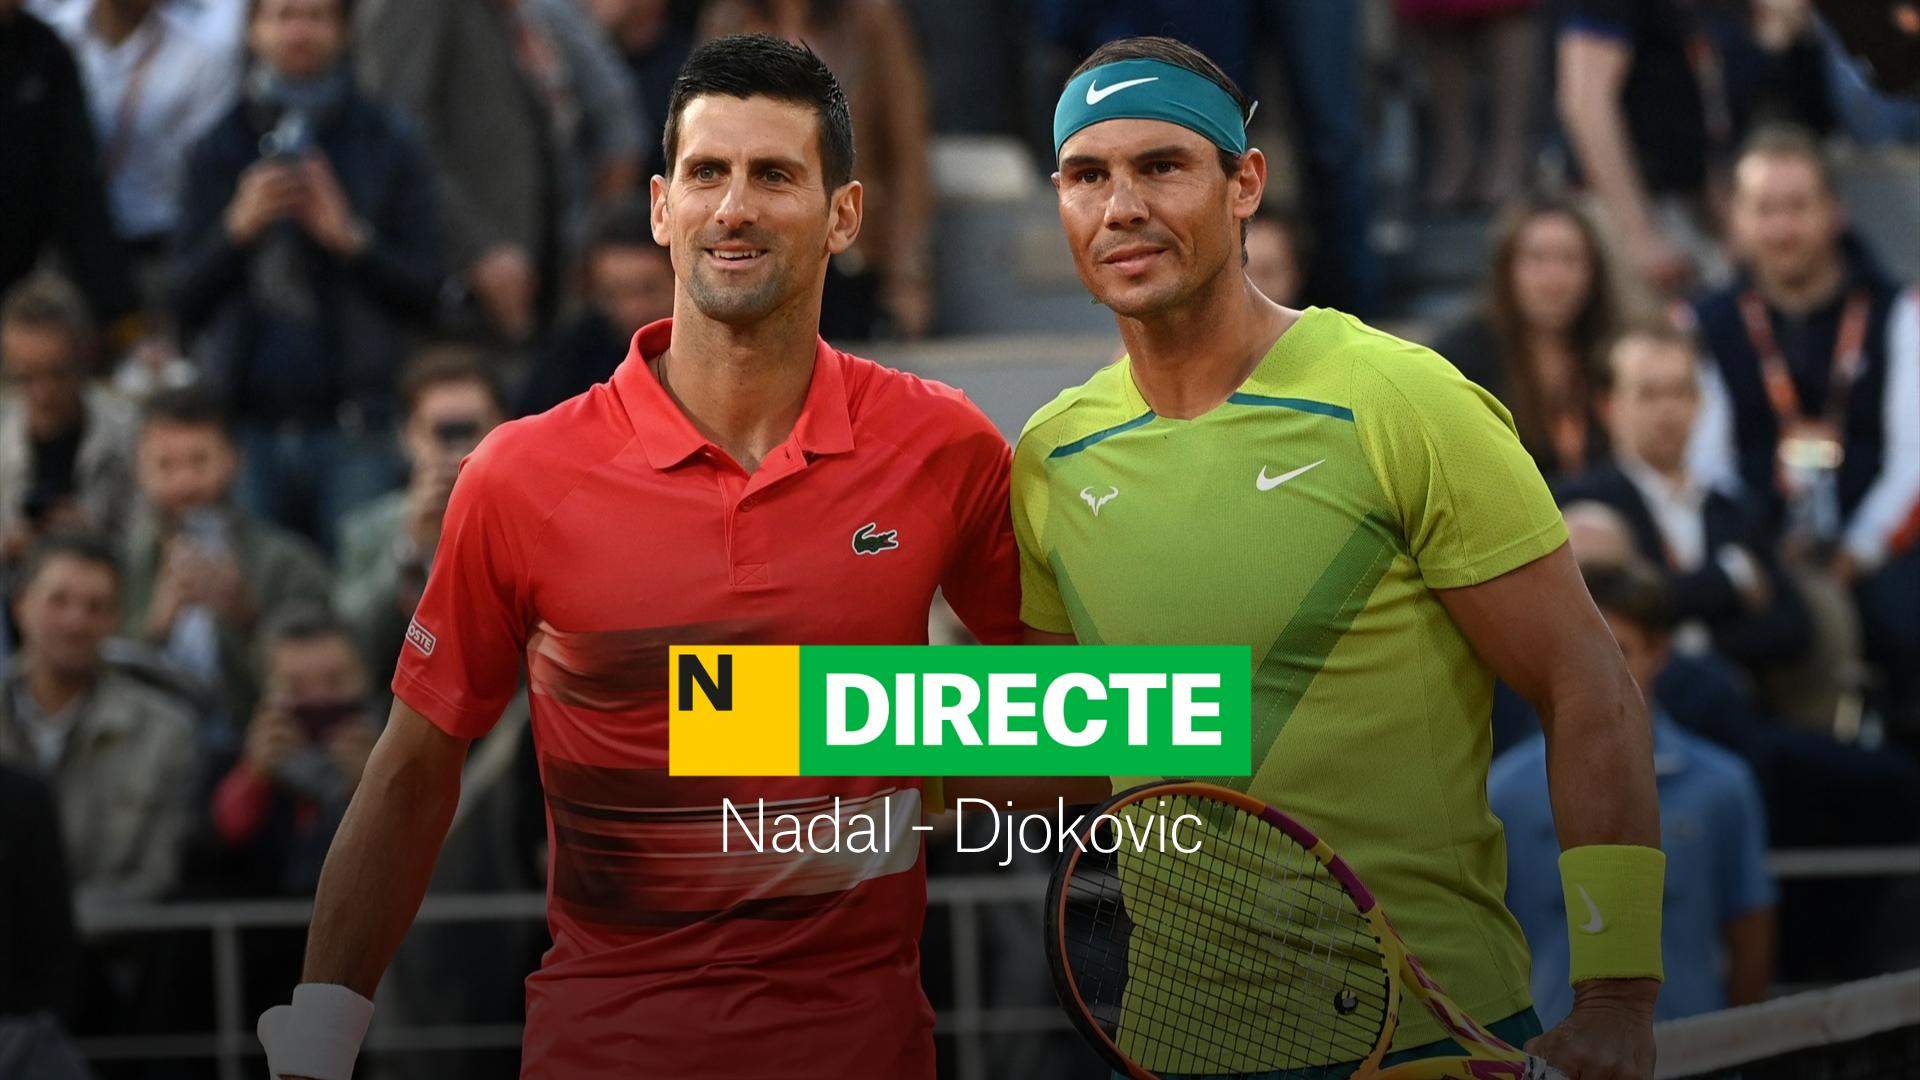 Nadal - Djokovic en los Juegos Olímpicos 2024, DIRECTO | Nadal no se rinde